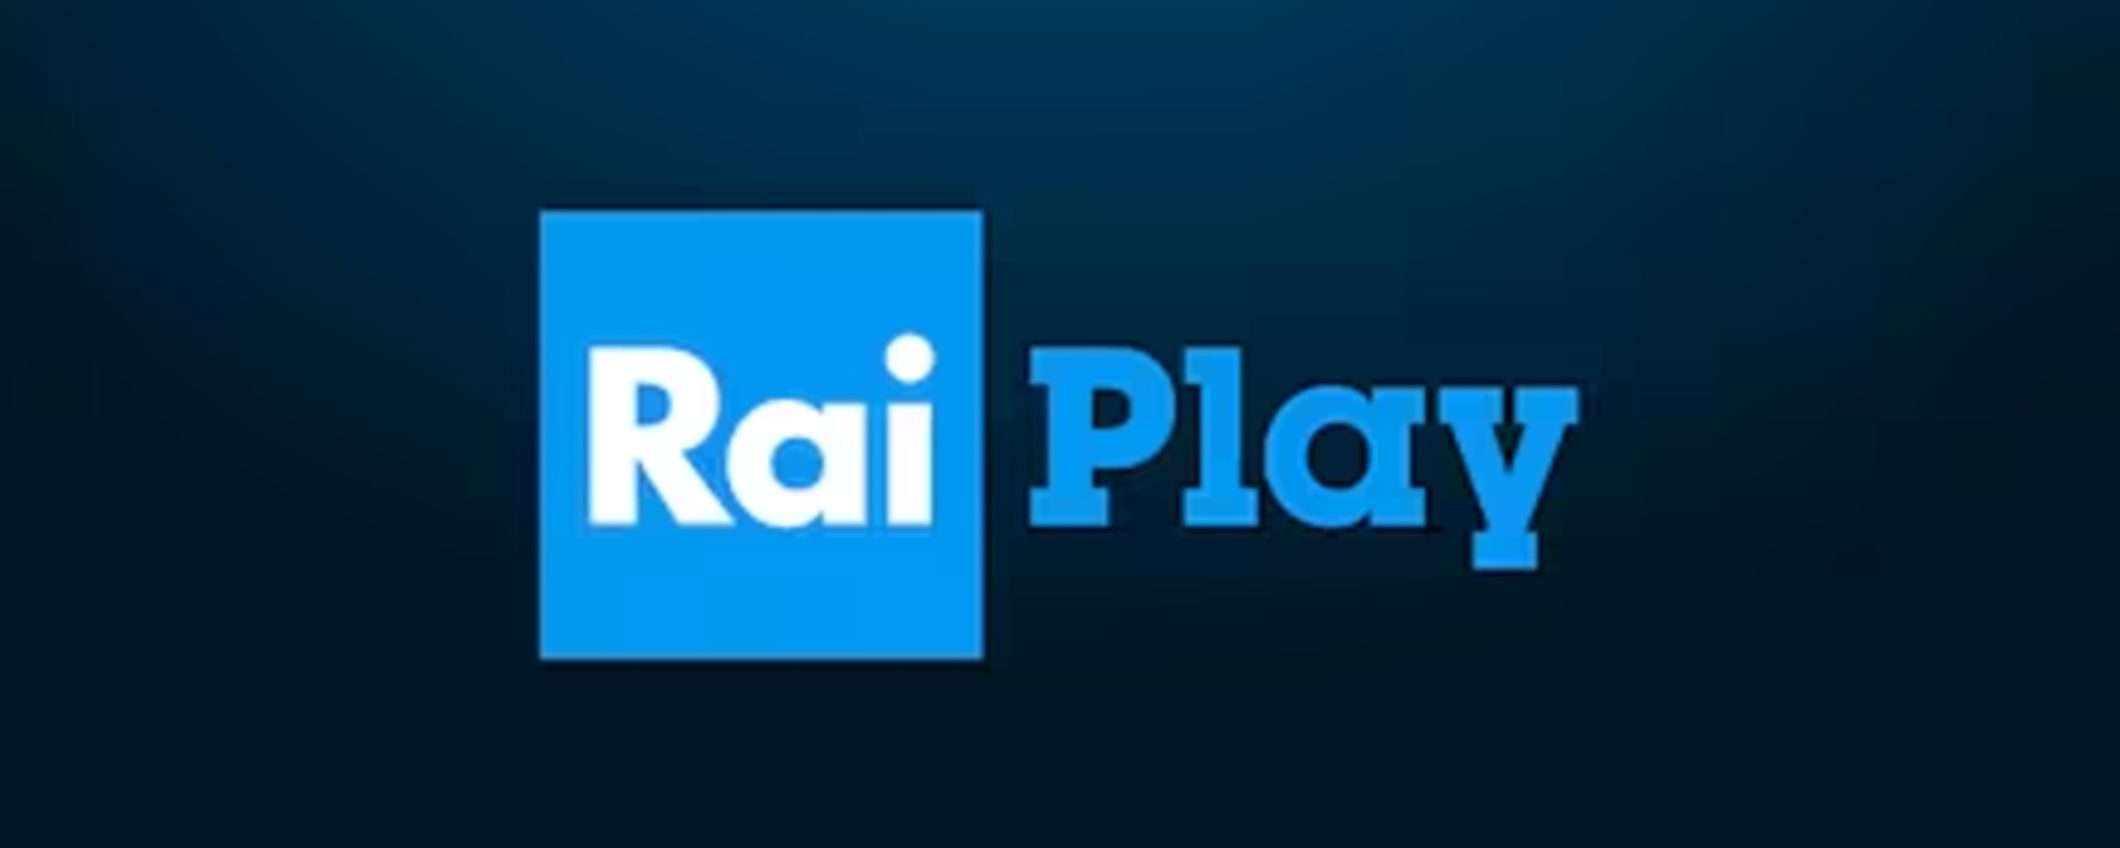 Come vedere RaiPlay all'estero senza blocchi